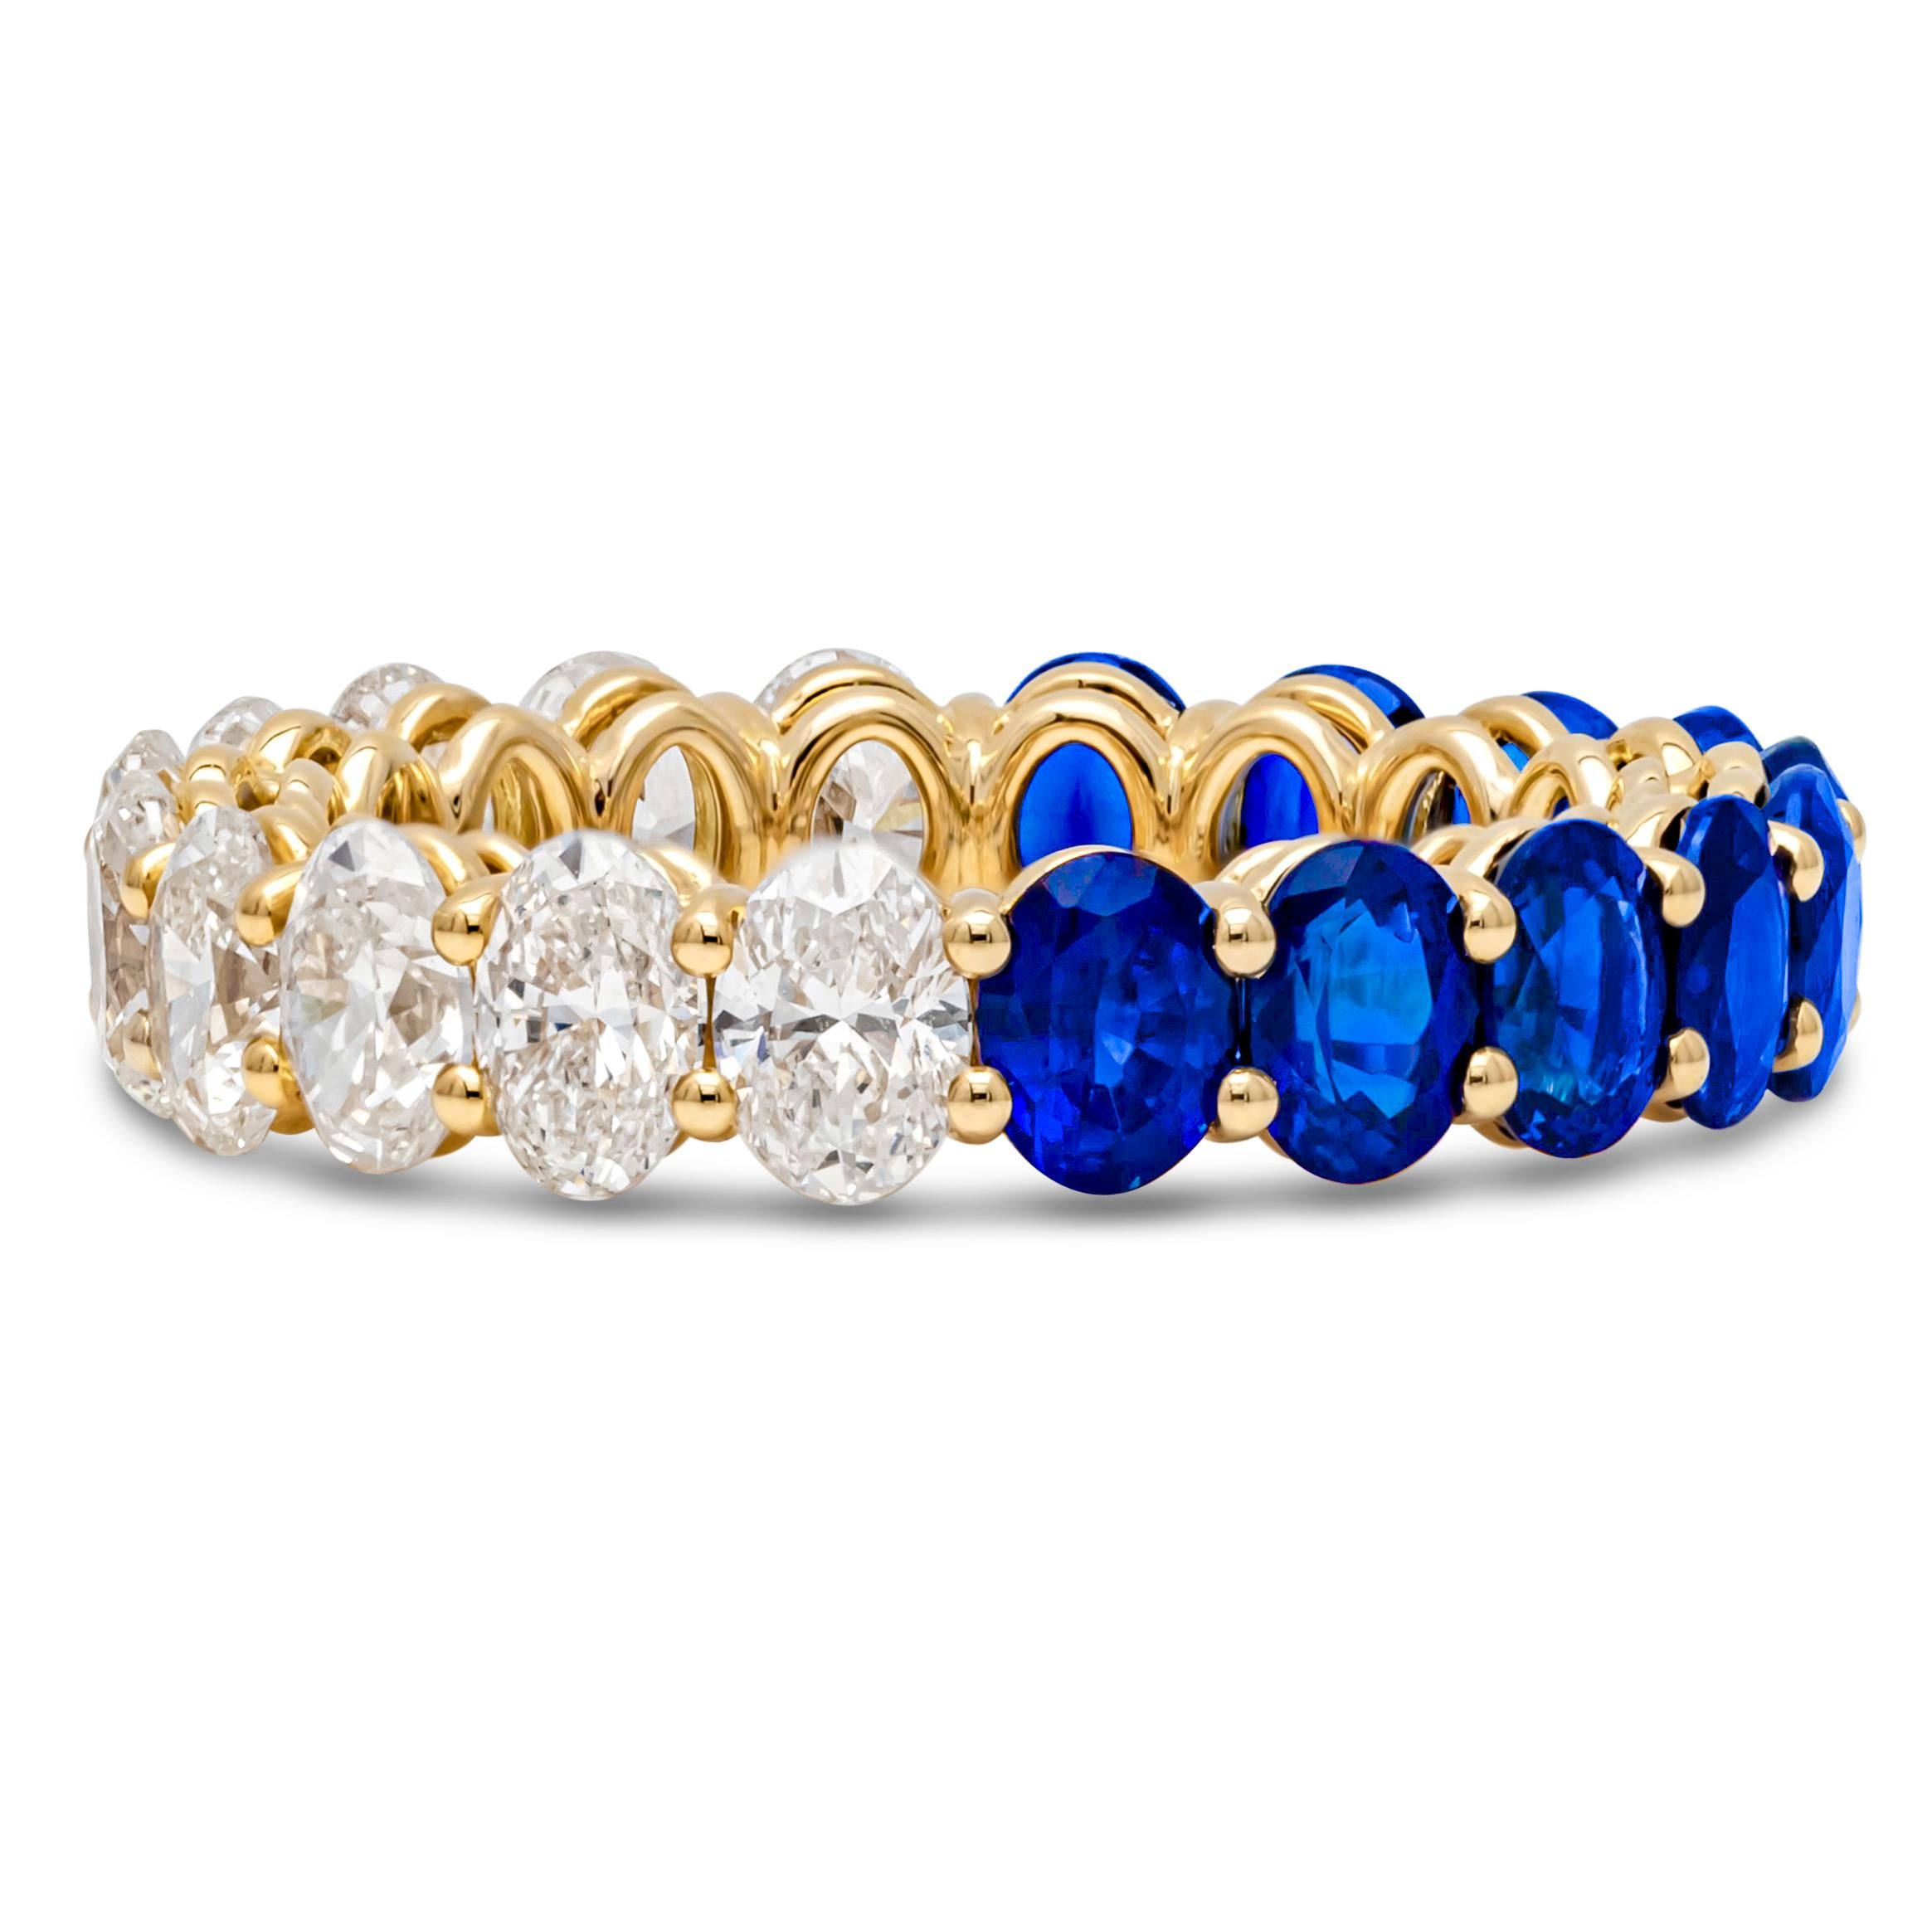 Ein wunderschöner und lebendiger Ehering mit 10 blauen Saphiren im Ovalschliff mit einem Gesamtgewicht von 3,18 Karat und 10 Diamanten im Brillantschliff mit einem Gesamtgewicht von 2,36 Karat, die in einer gemeinsamen Zackenfassung gefasst sind.